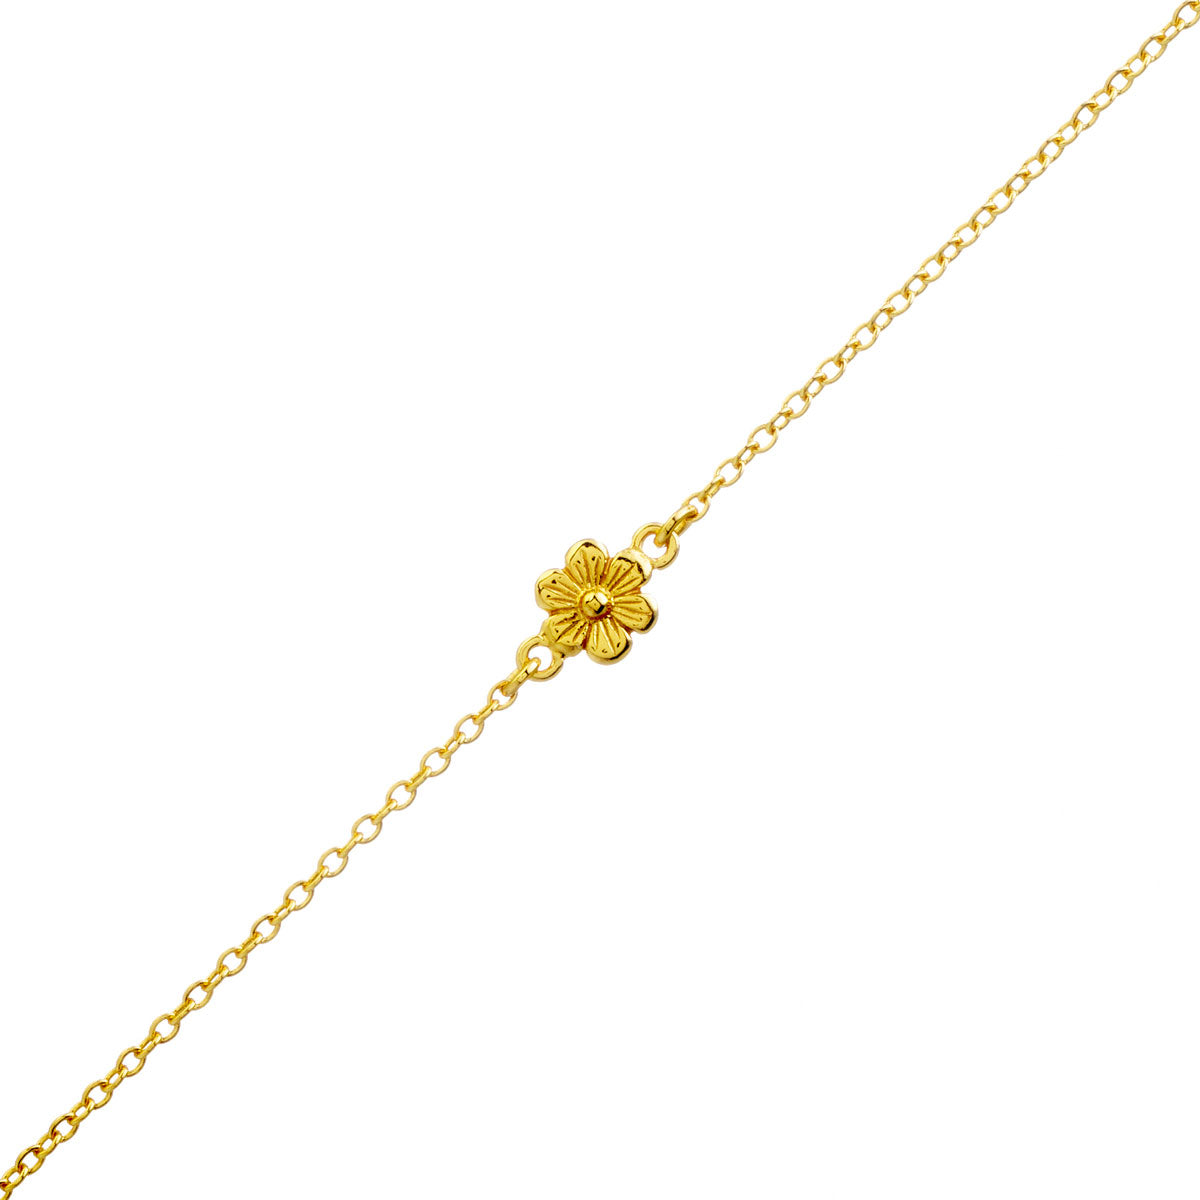 Blossom Bracelet Gold